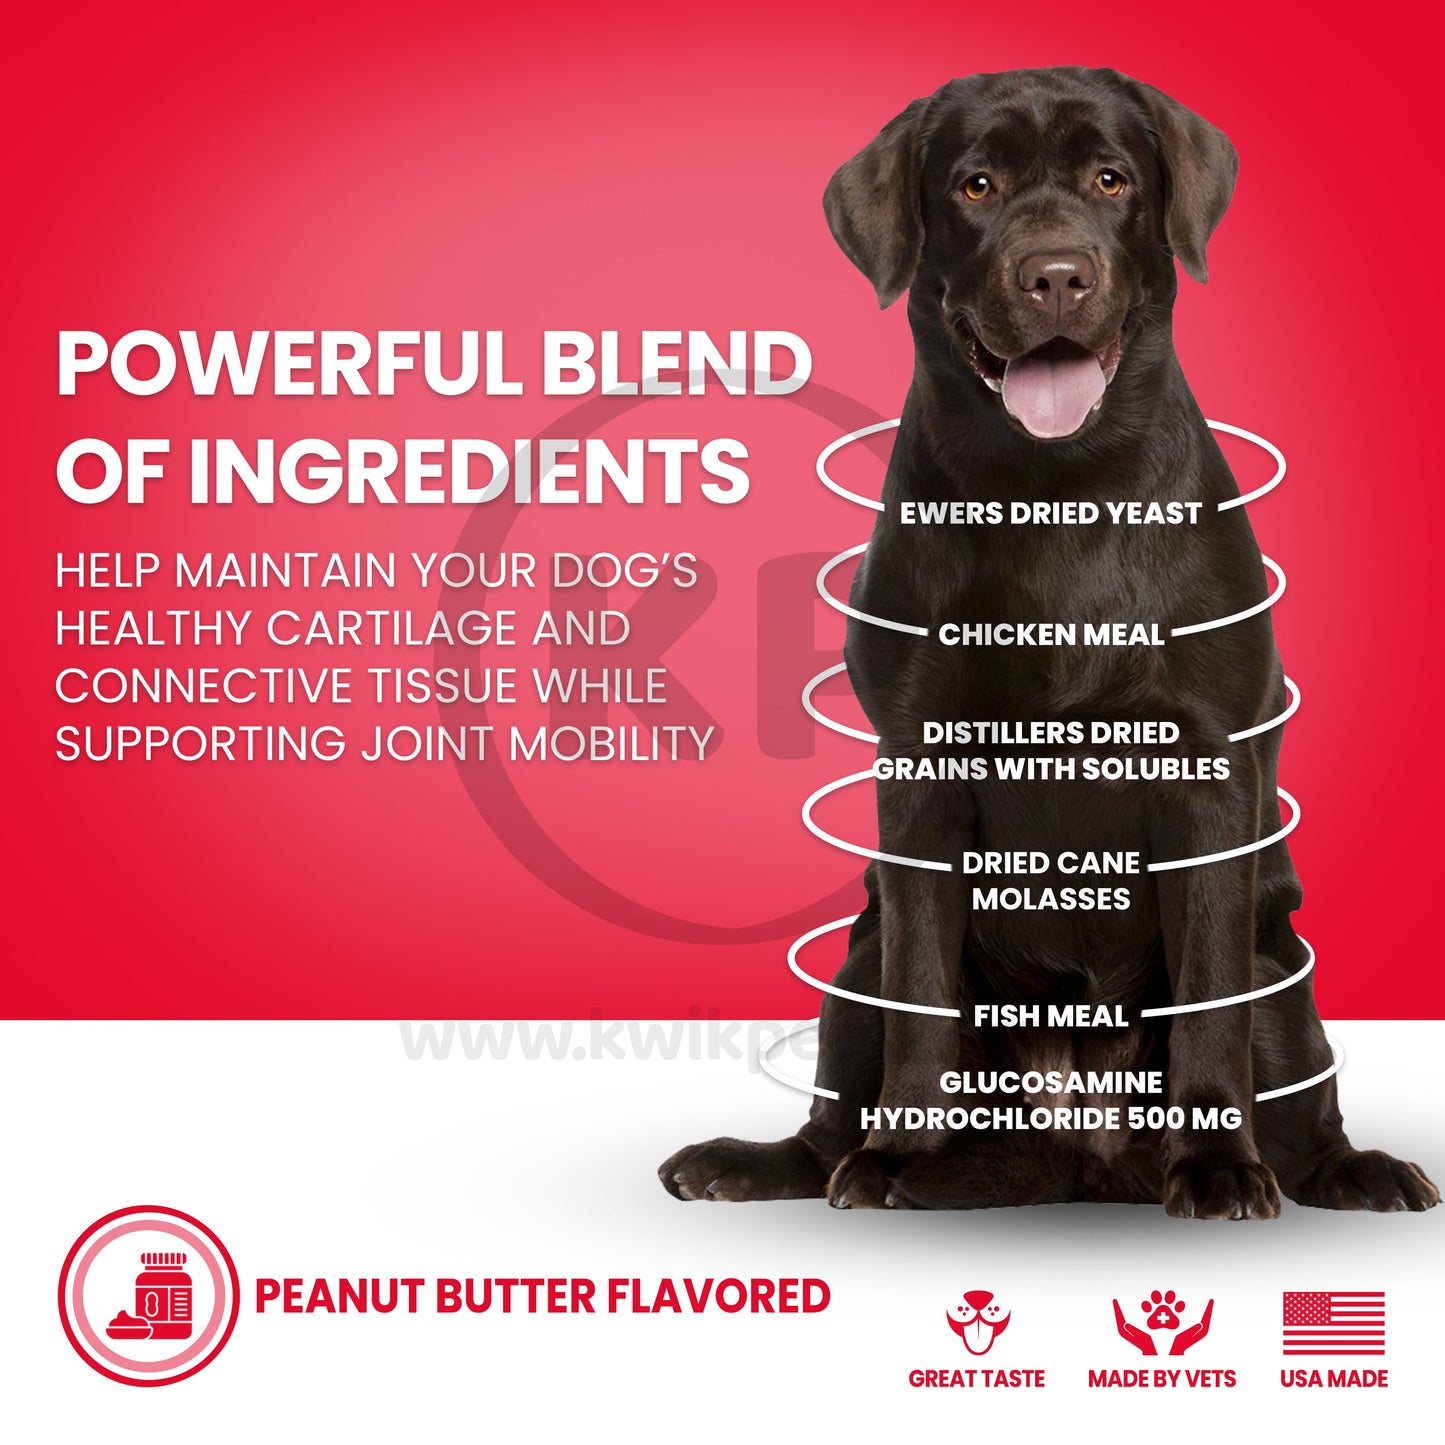 Nutri-Vet Hip & Joint Dog Biscuits Peanut Butter, Large. 6-lb, Nutri-Vet